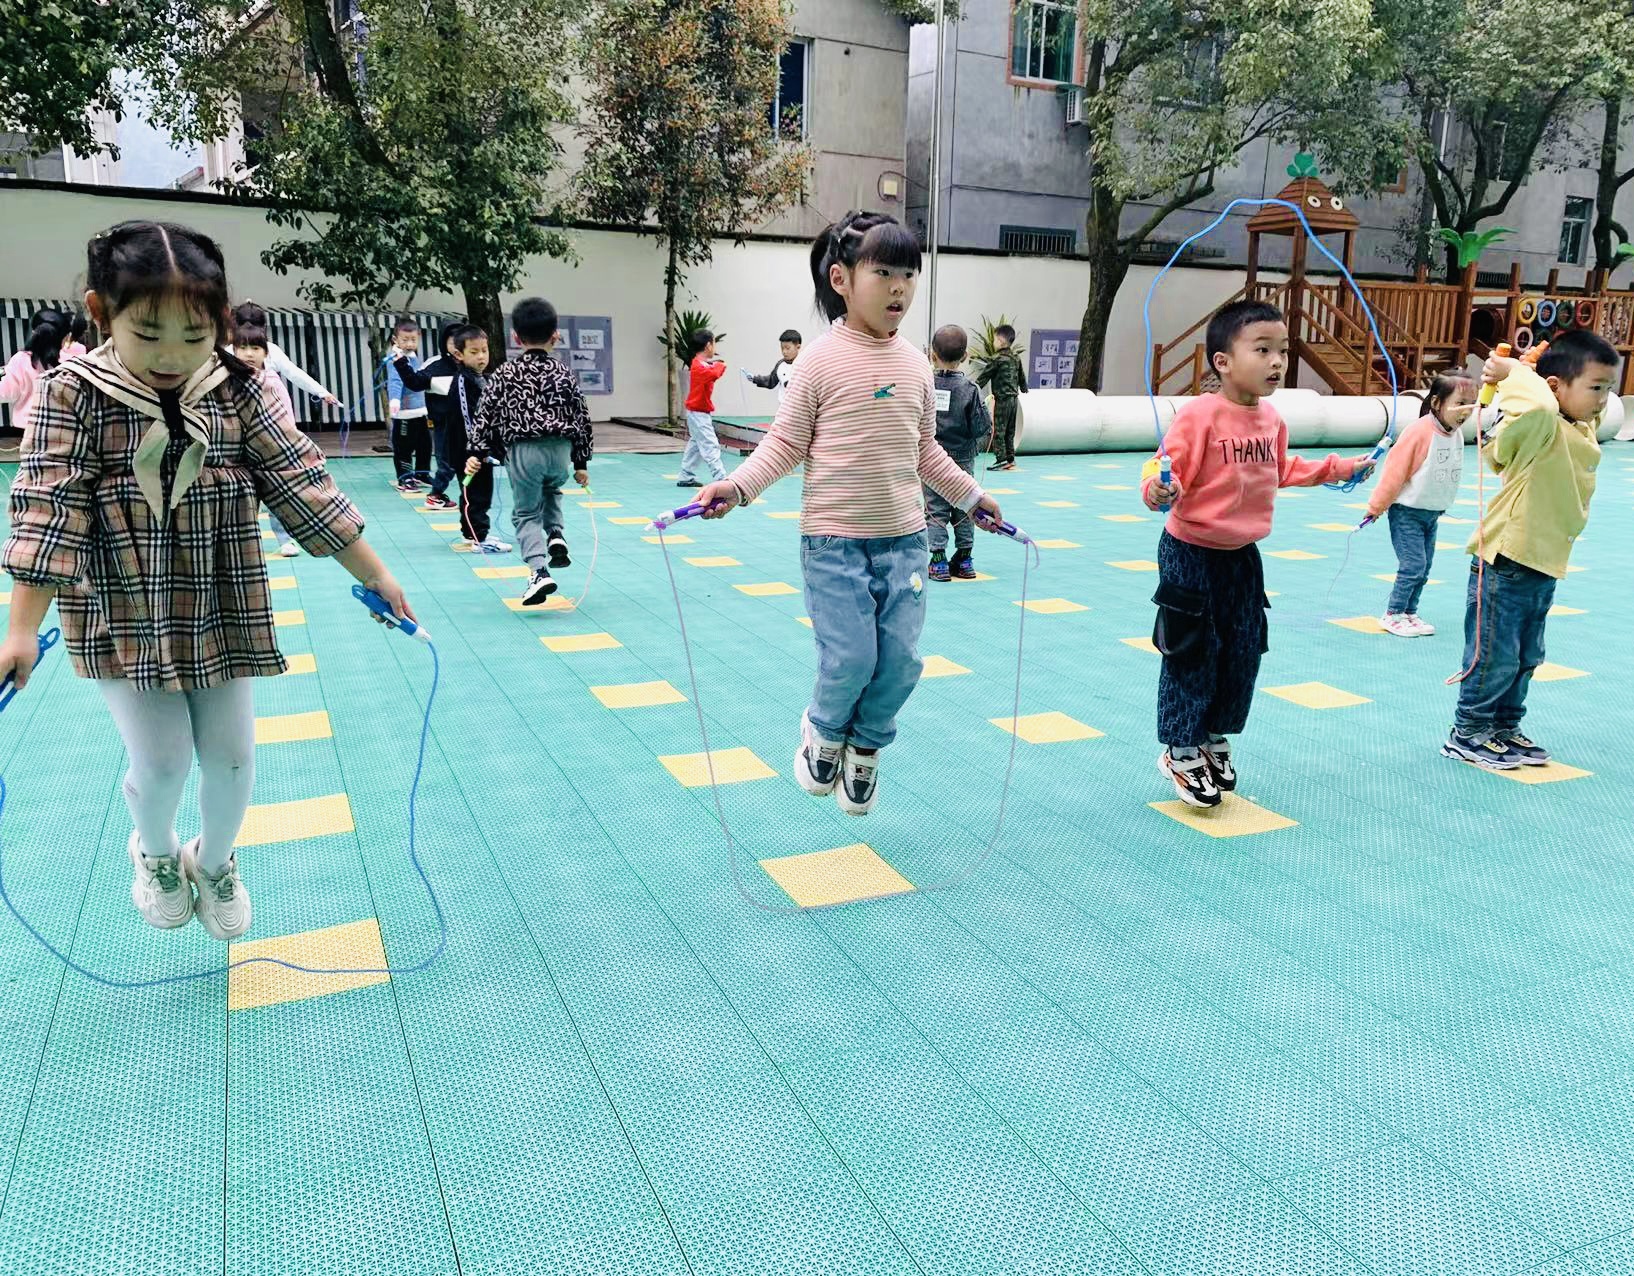 上方镇中心幼儿园:两周养成跳绳达人